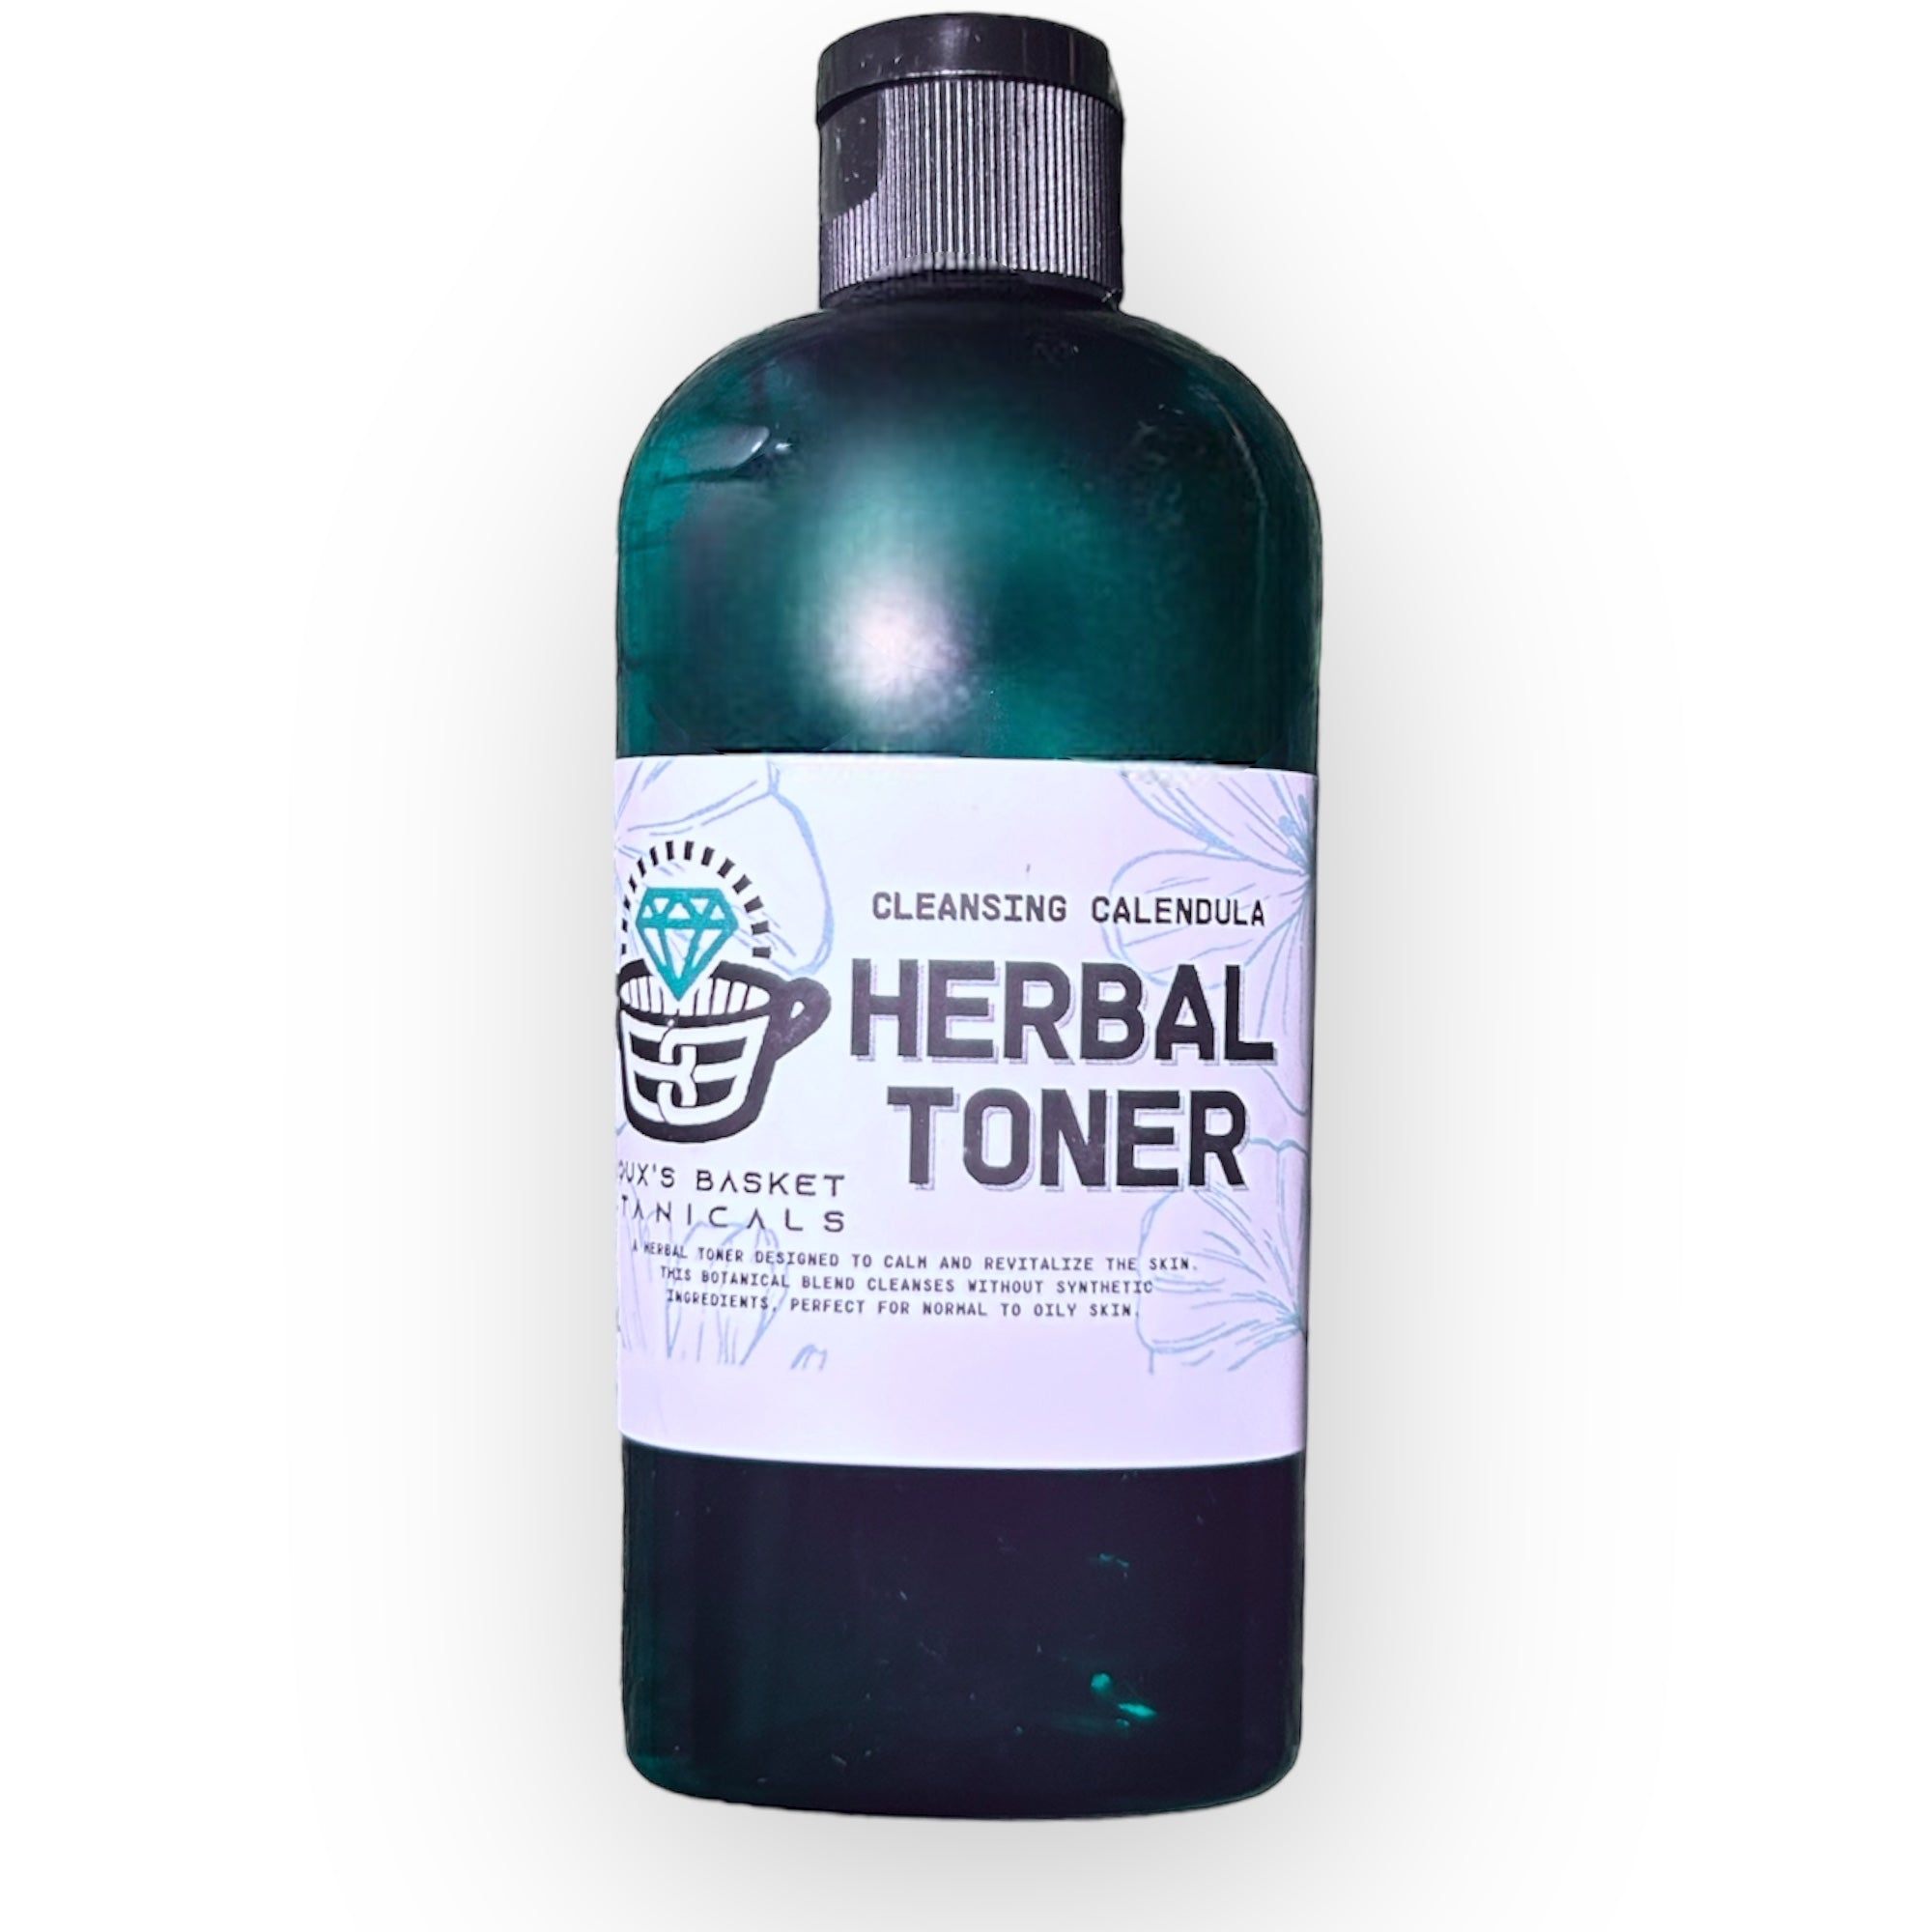 Cleansing Calendula Herbal Toner